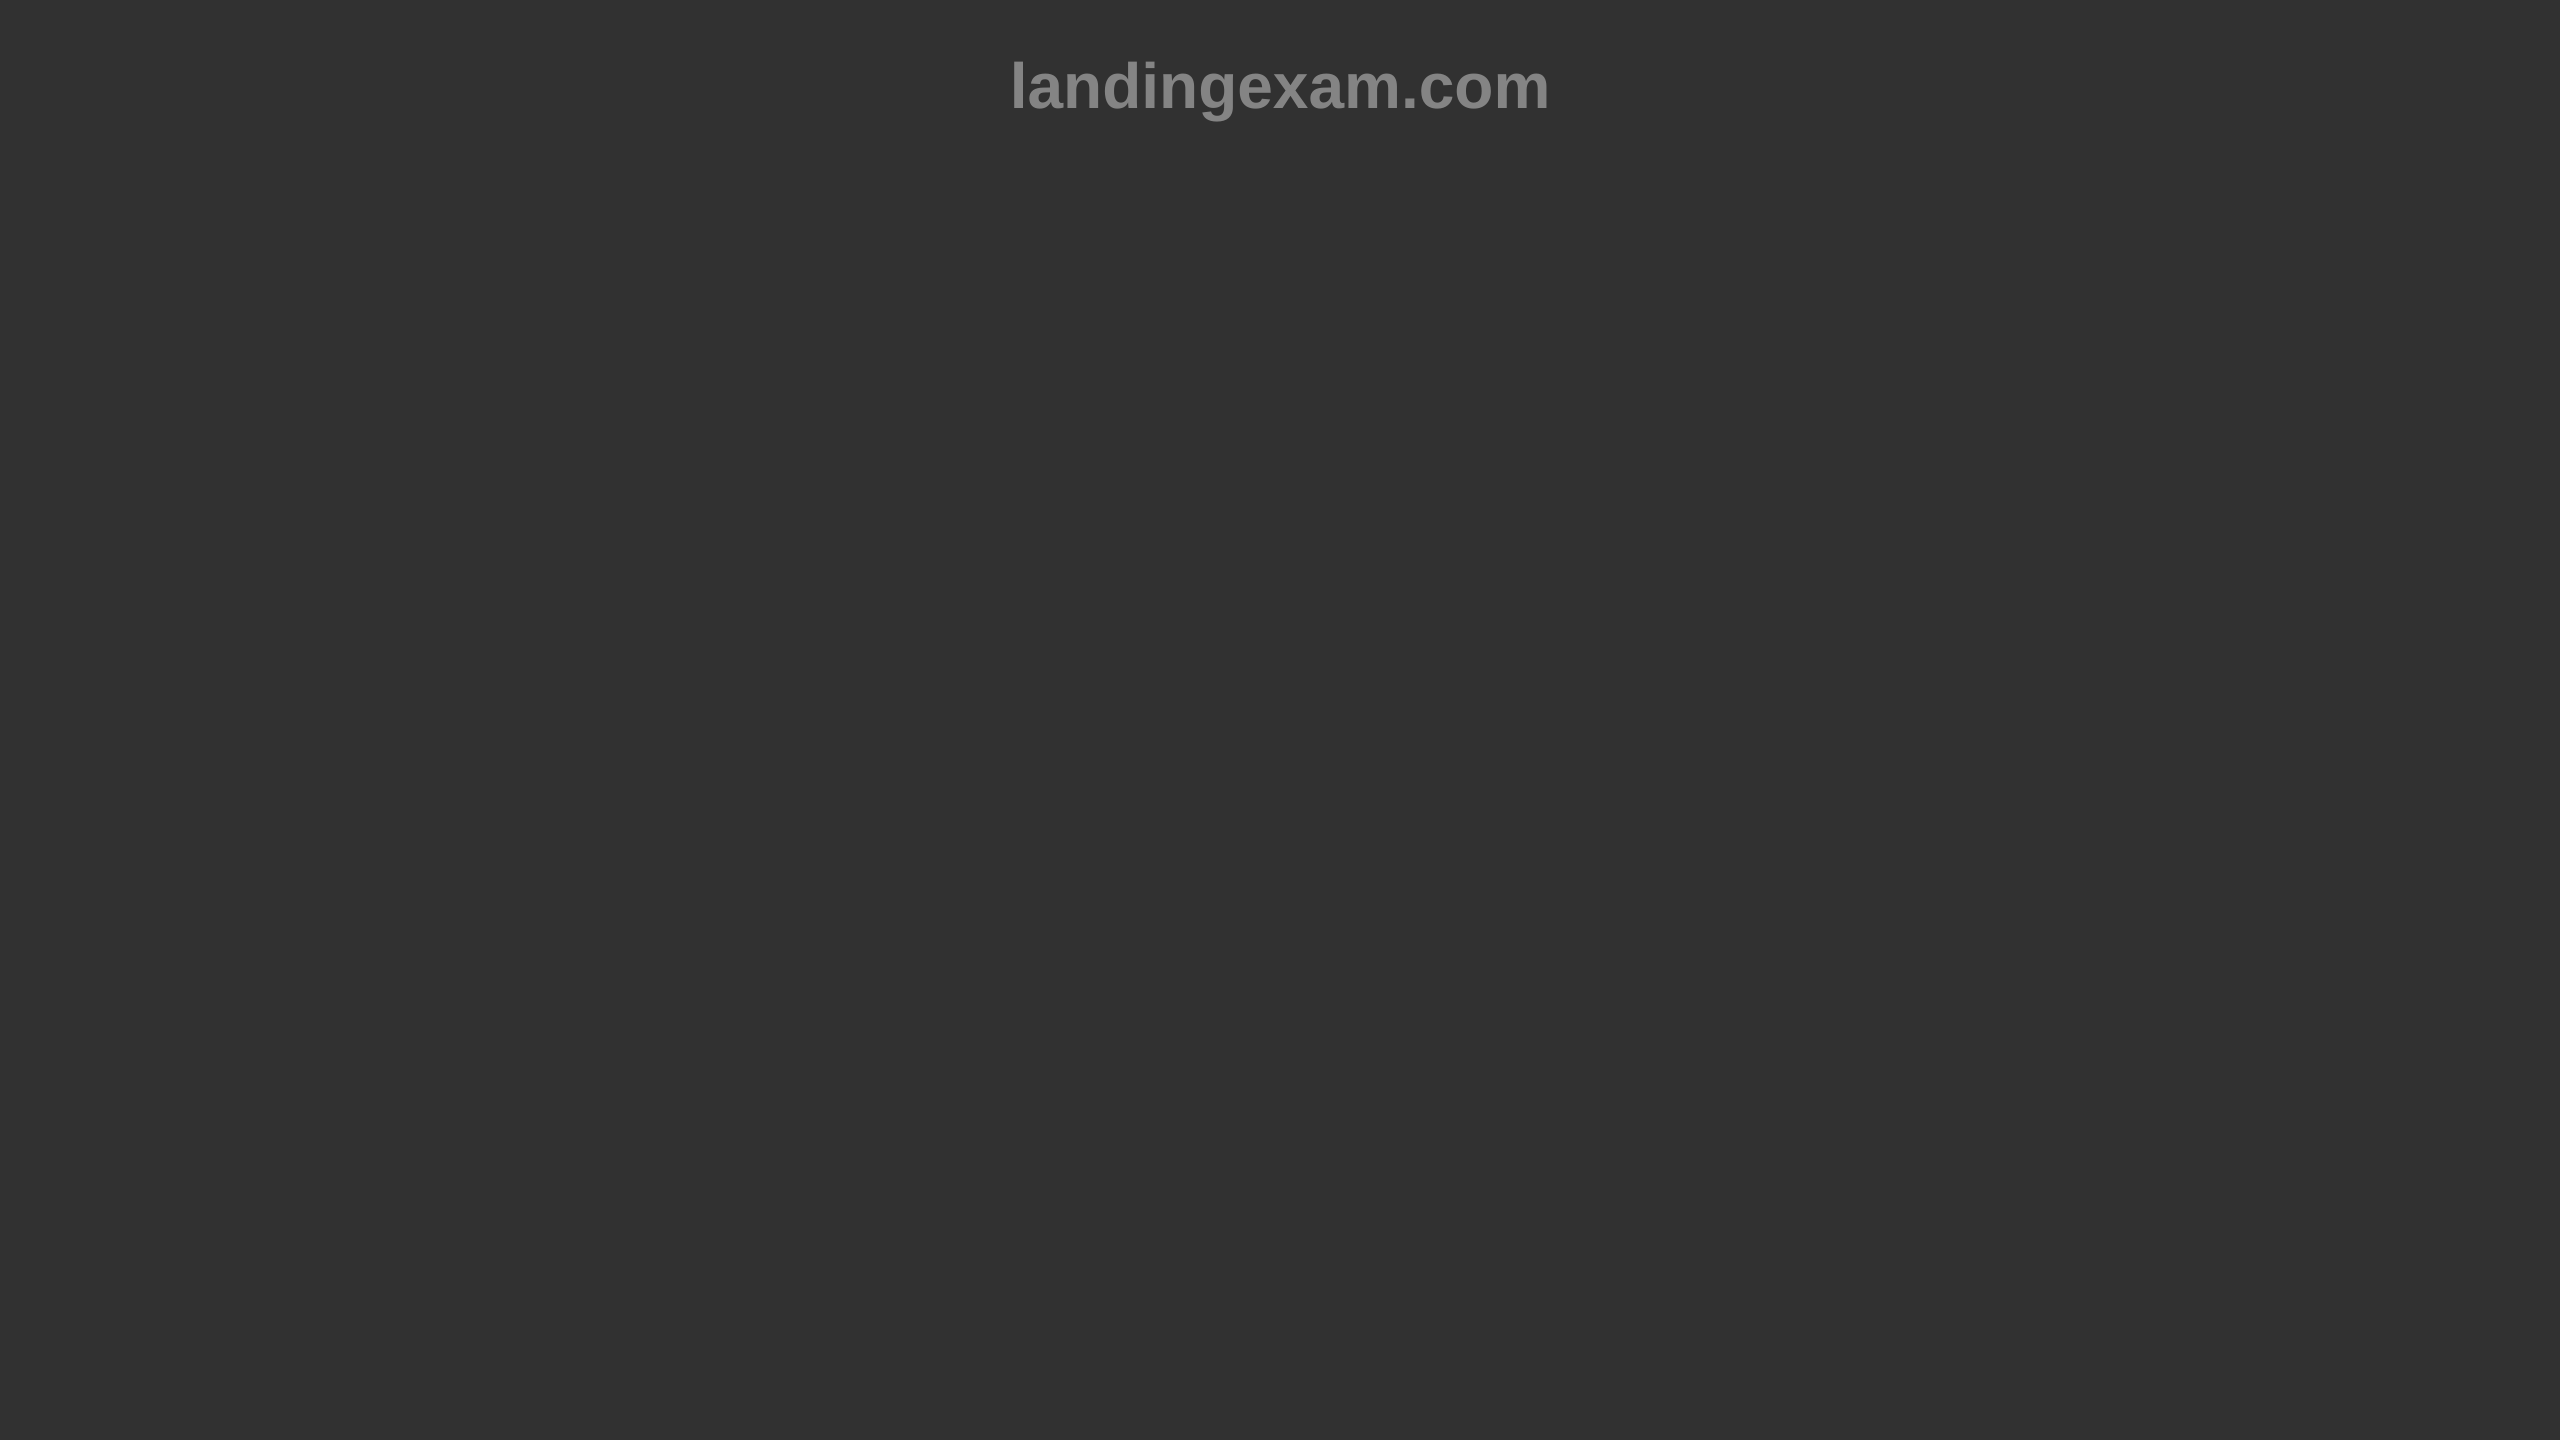 Landingexam's website screenshot